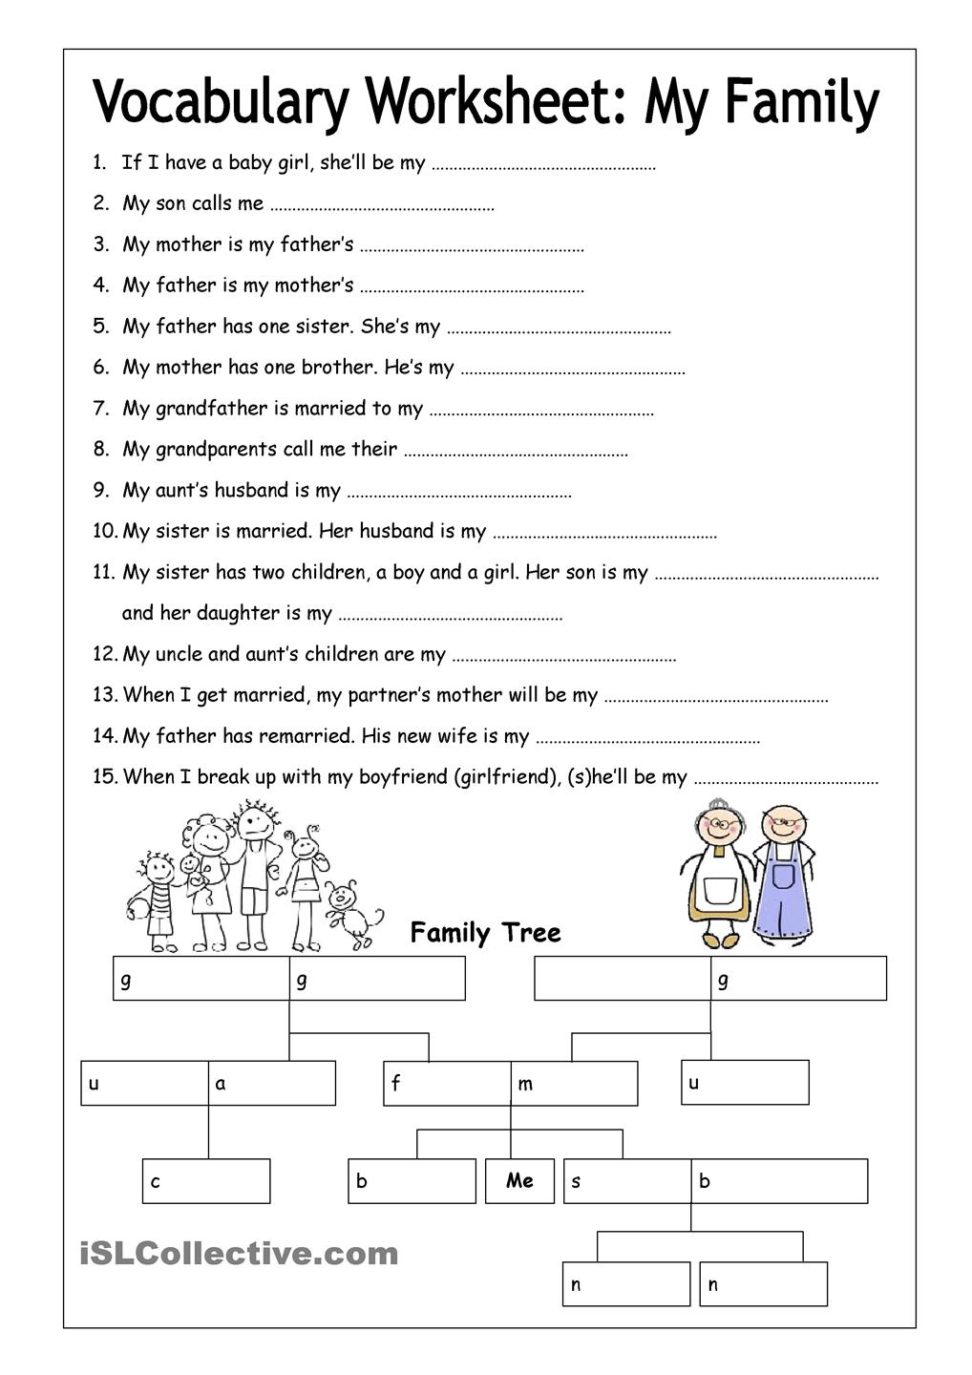 Print Student Behavior Worksheets Quiz Worksheet Contracts